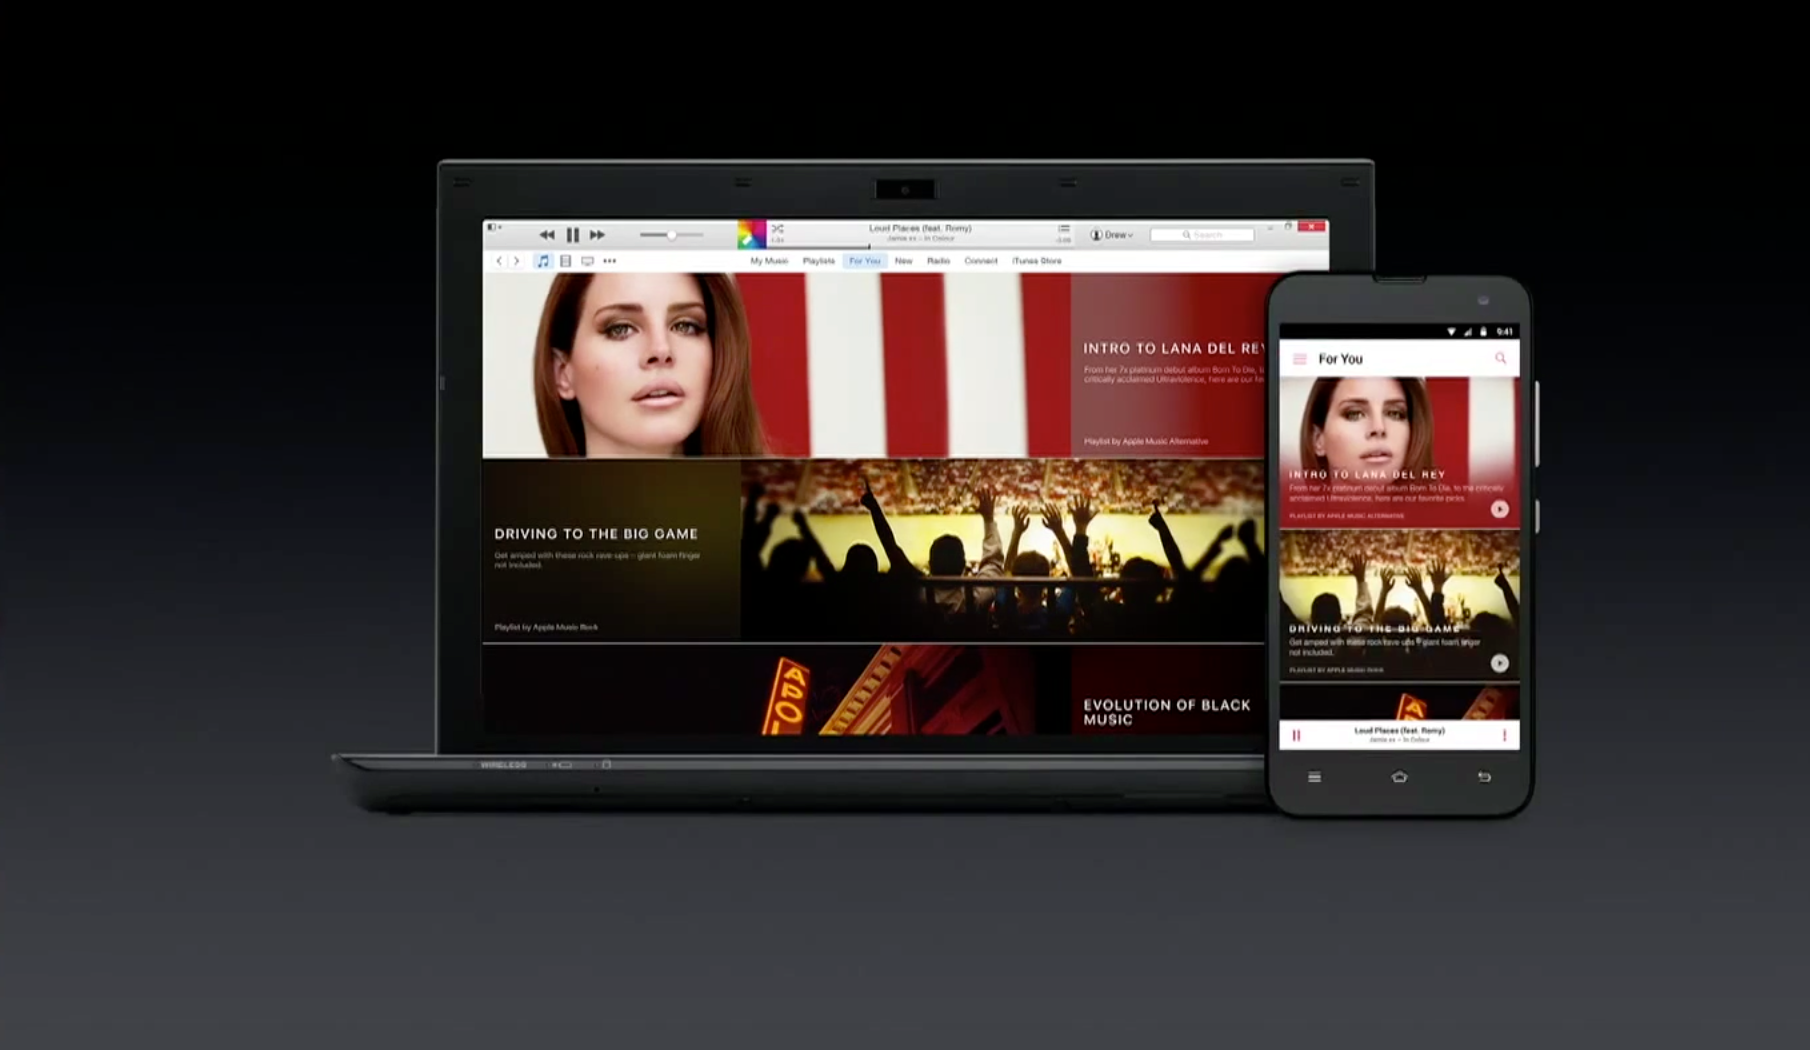 เผยภาพ screenshot หน้าตา Apple Music ก่อนเปิดตัวบนระบบ Android เร็วๆ นี้